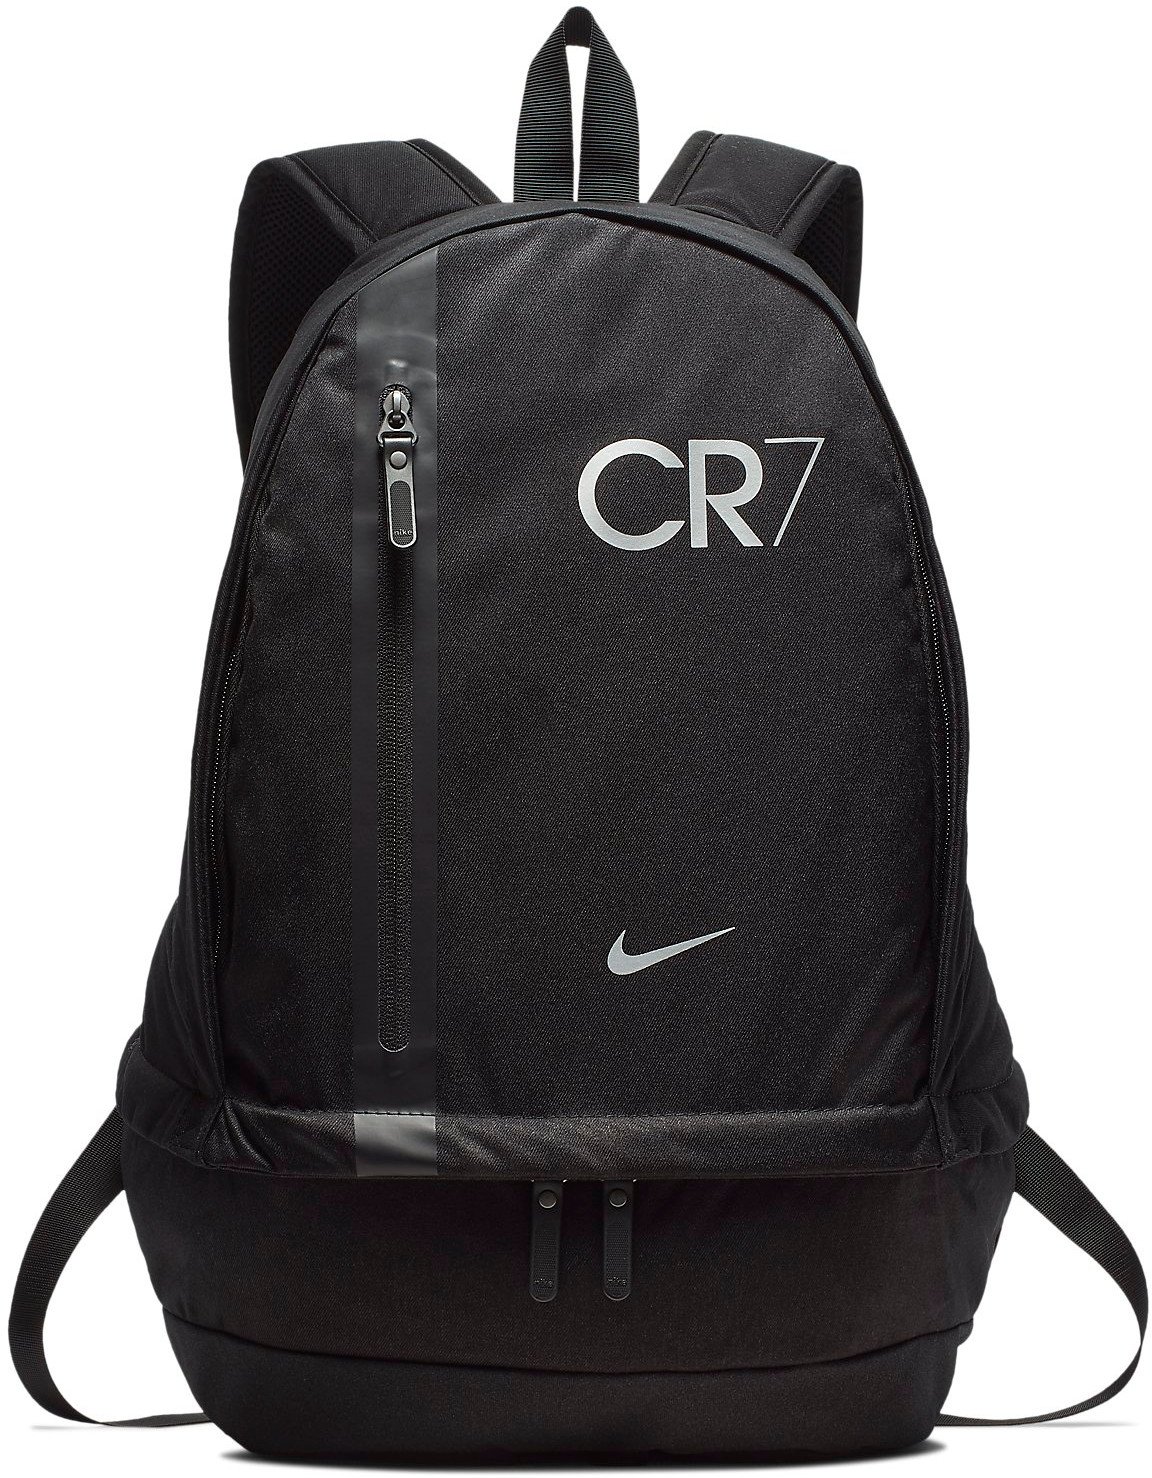 Backpack Nike CR7 NK CHYN BKPK